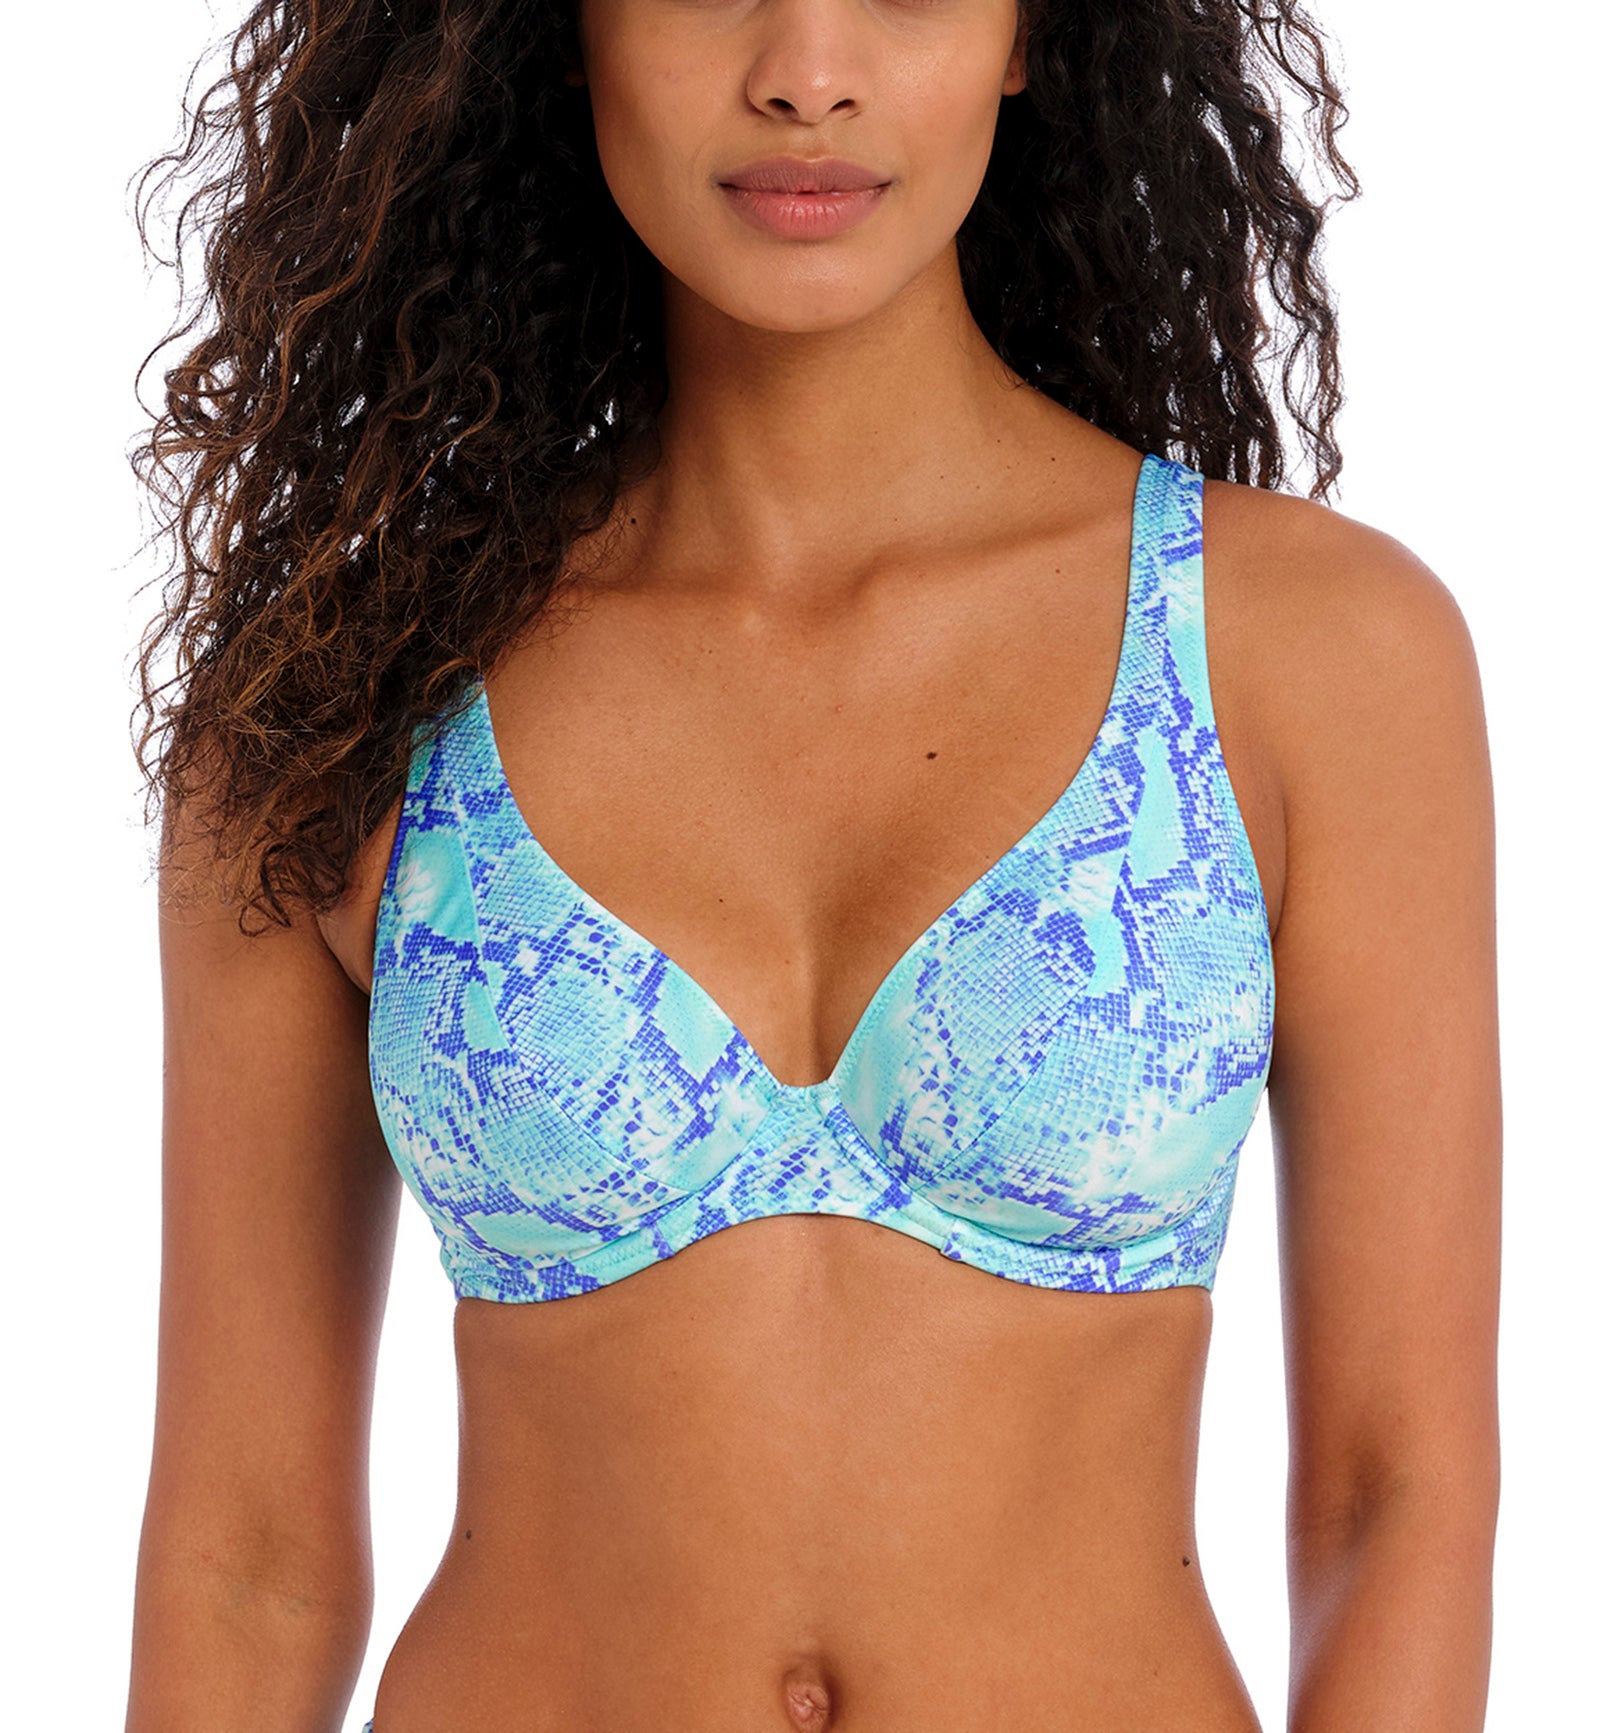 Freya Komodo Bay Underwire High Apex Bikini Top (204013),28FF,Aqua - Aqua,28FF